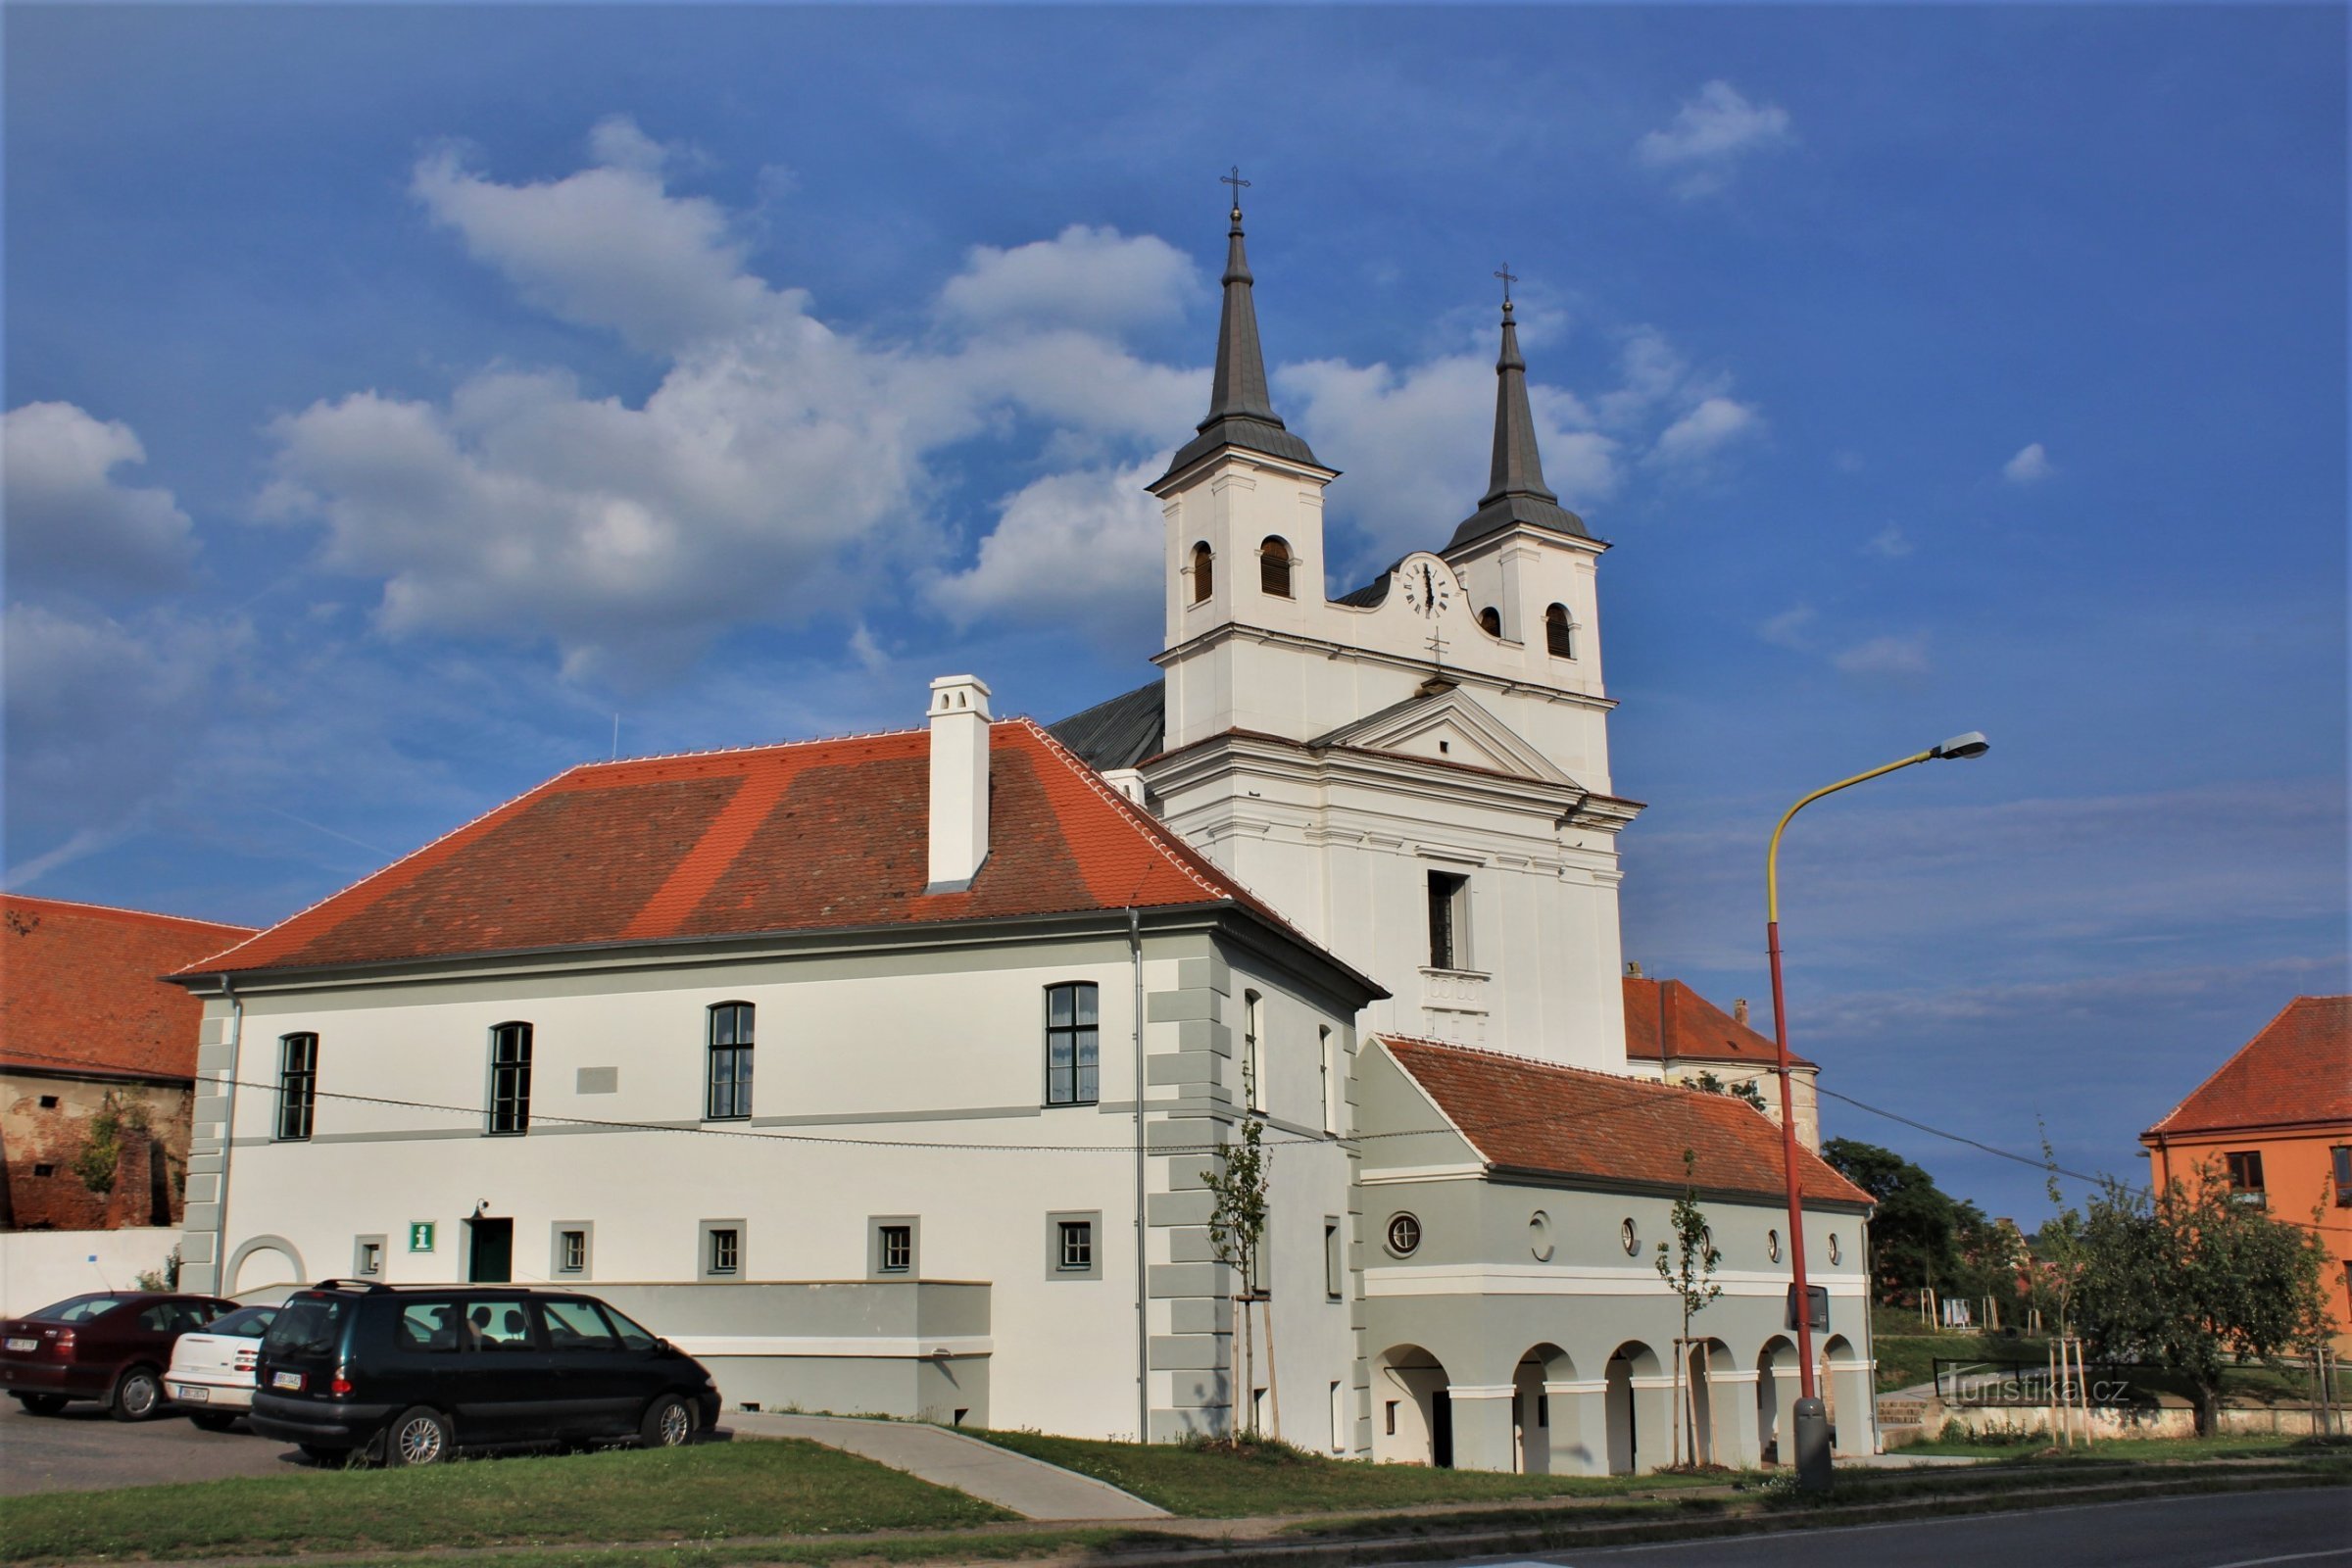 Detail van de gebouwen van het oude stadhuis, daarachter de kerk van de heilige drie-eenheid